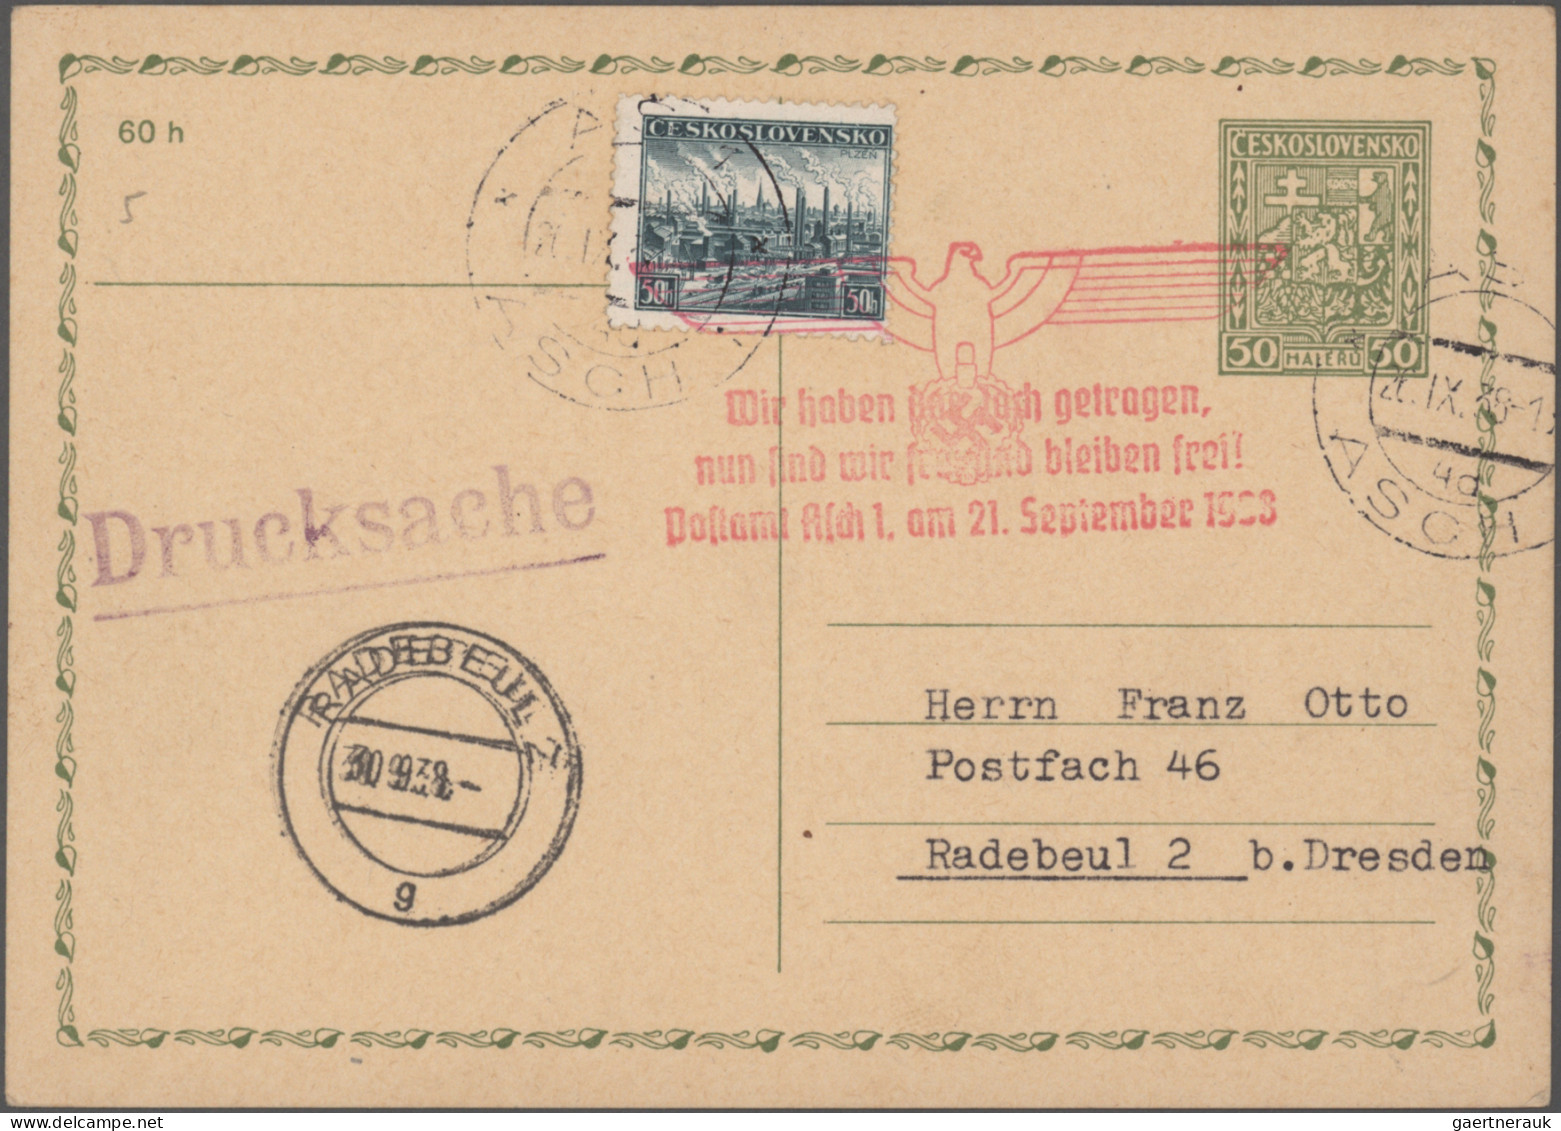 Deutsche Besetzung II. WK: 1938/1945, Zusammenstellung auf Steckseiten, dabei Su